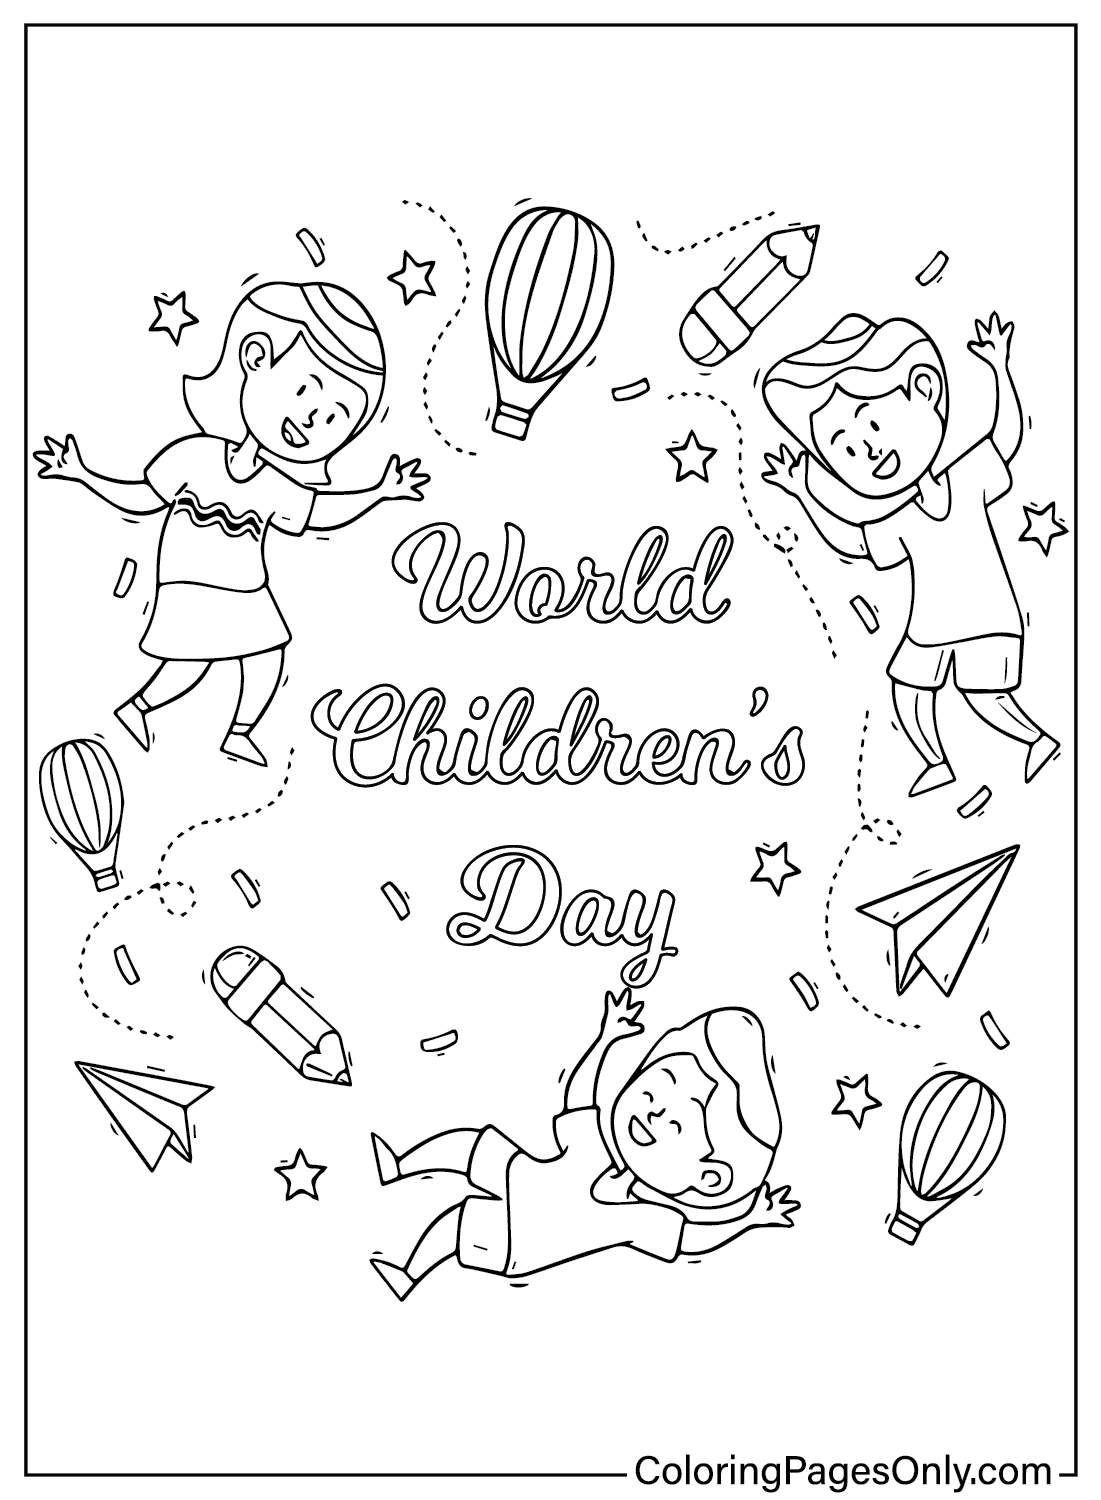 صفحة ملونة ليوم الطفل العالمي من يوم الطفل